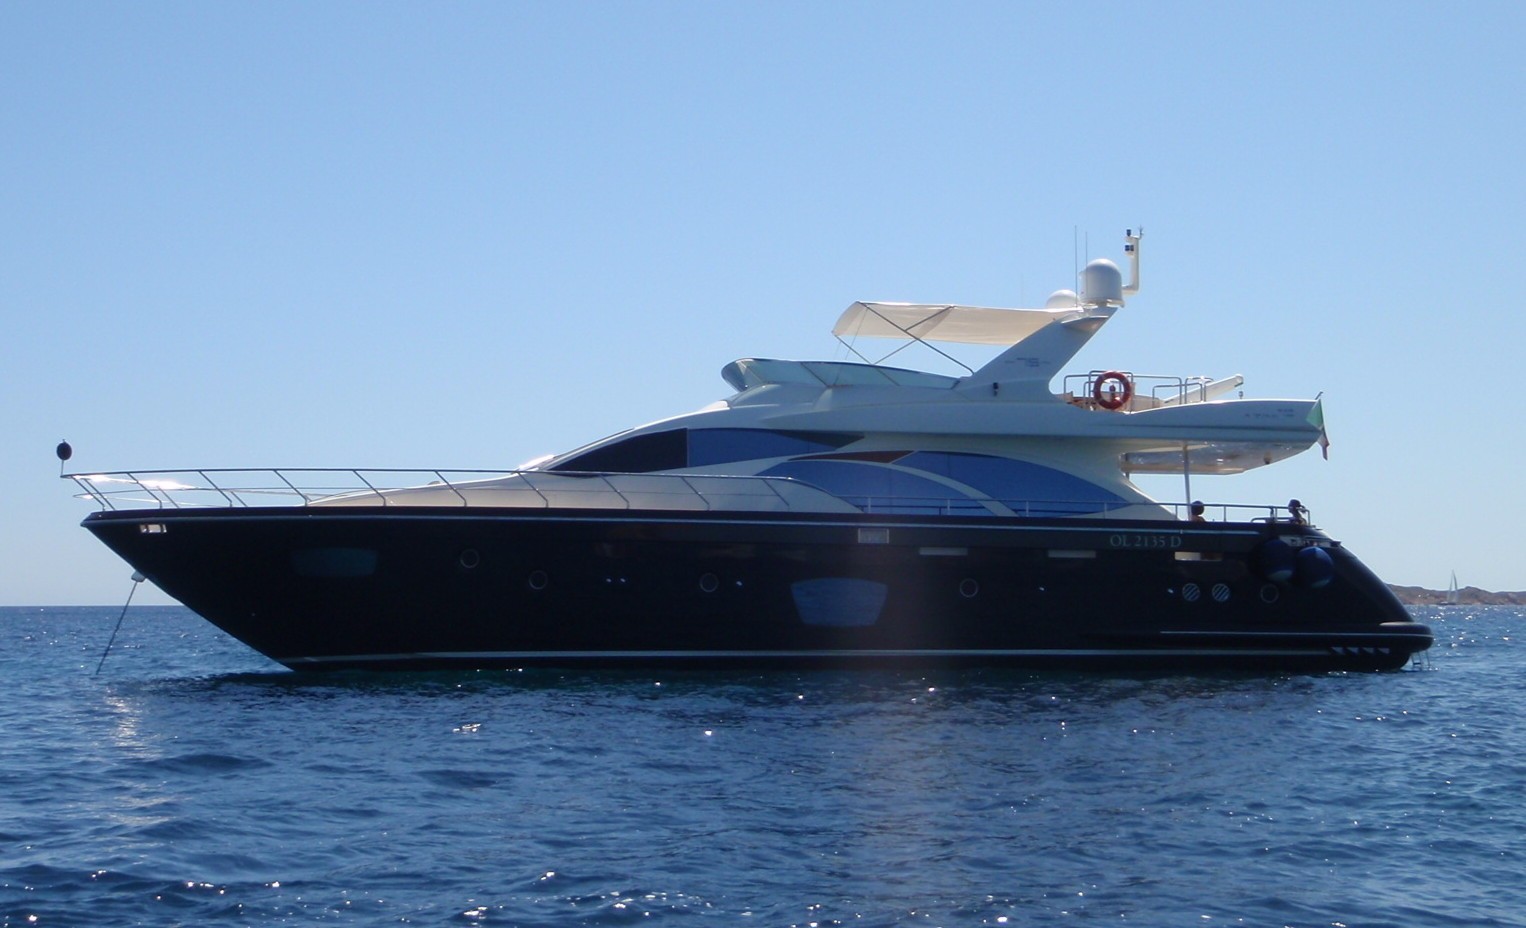 The 22m Yacht CAROCLA II